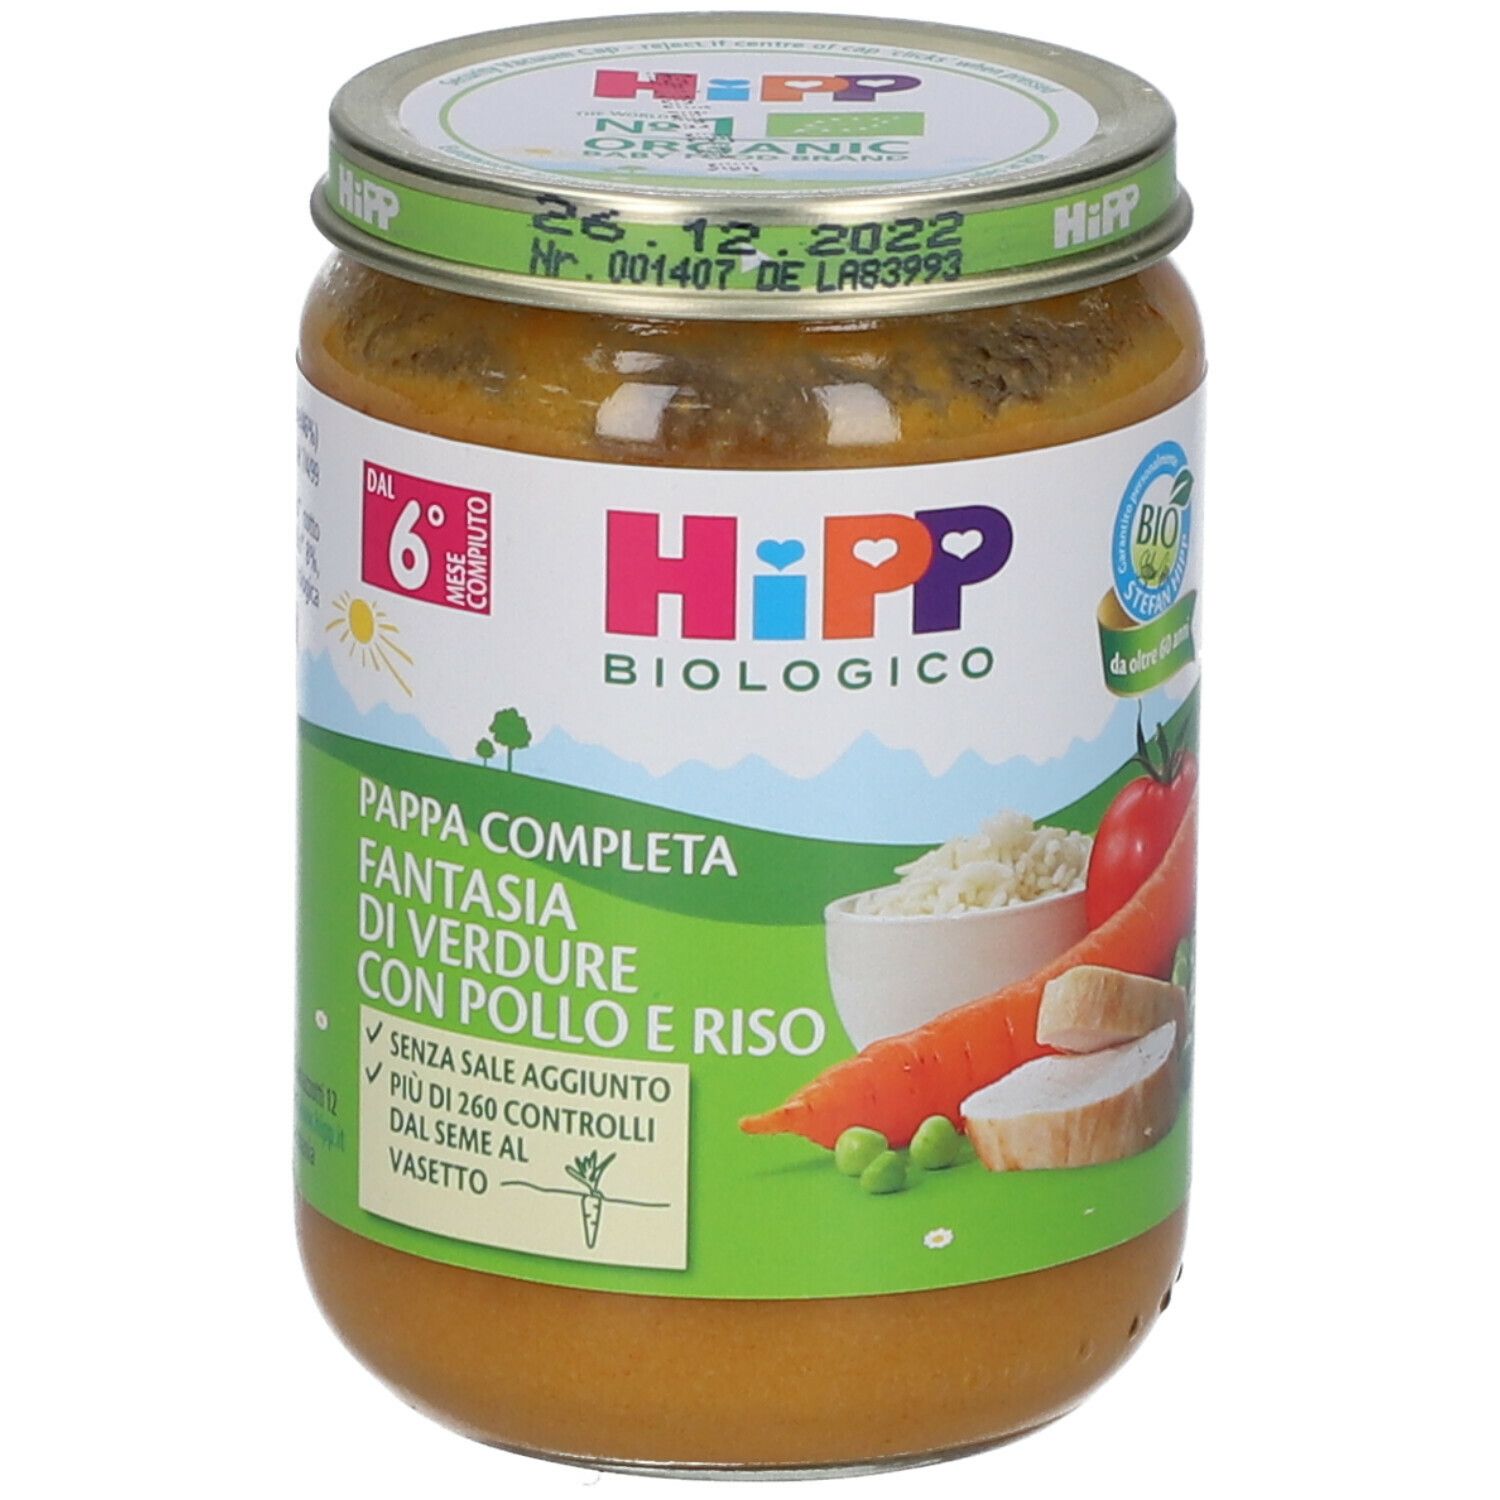 Image of HiPP Biologico Pappa Completa Fantasia di Verdure con Pollo e Riso